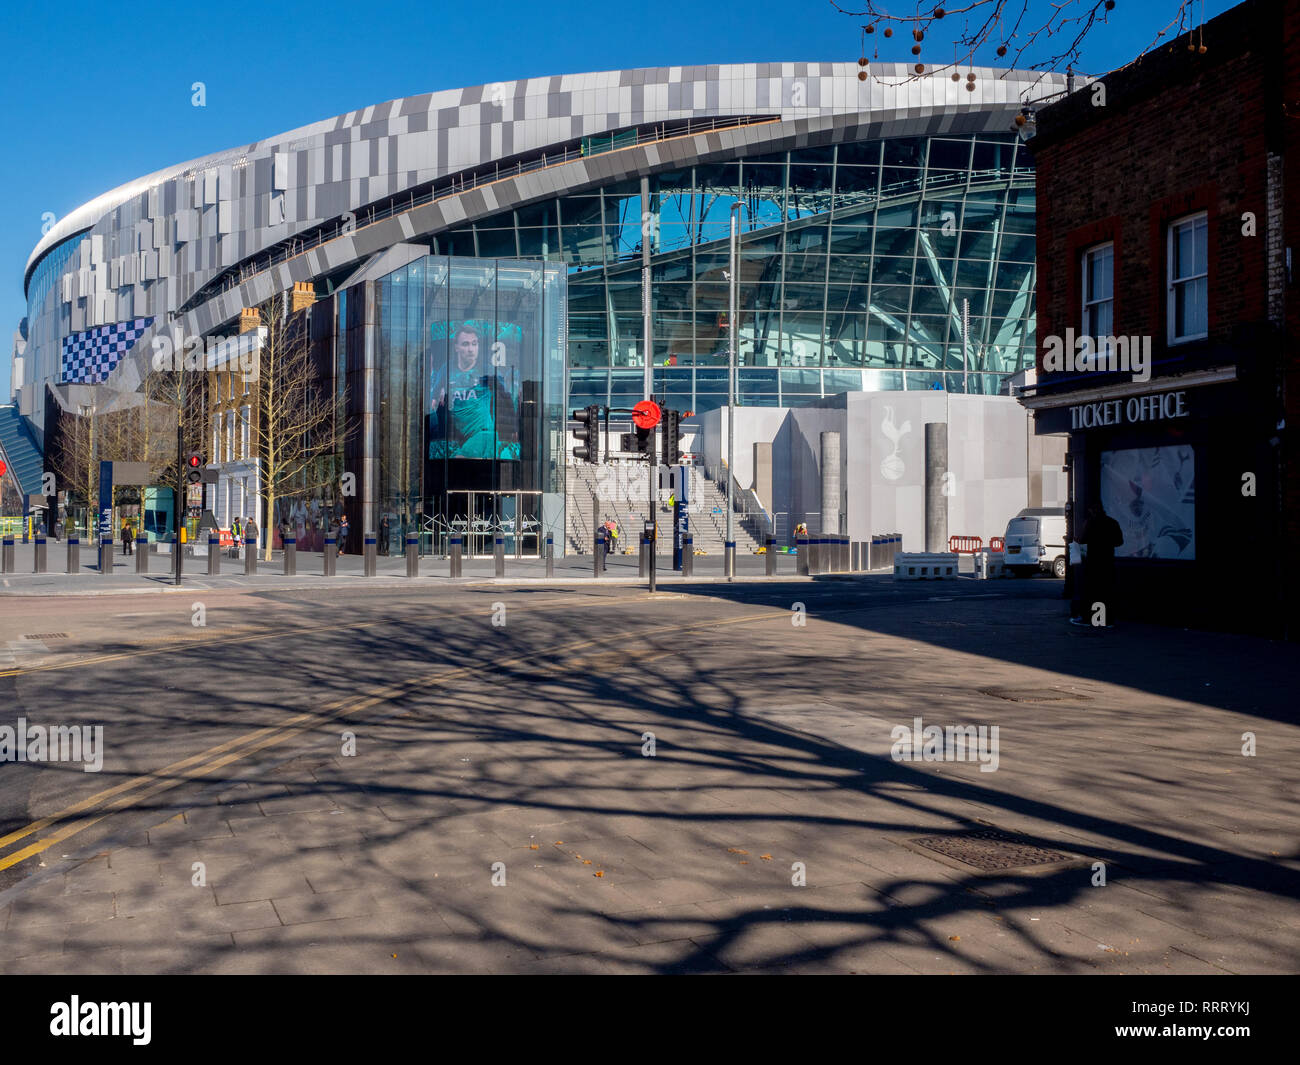 Le nouveau Tottenham Hotspur FC (Spurs) stade dans la banlieue nord de Londres. Banque D'Images